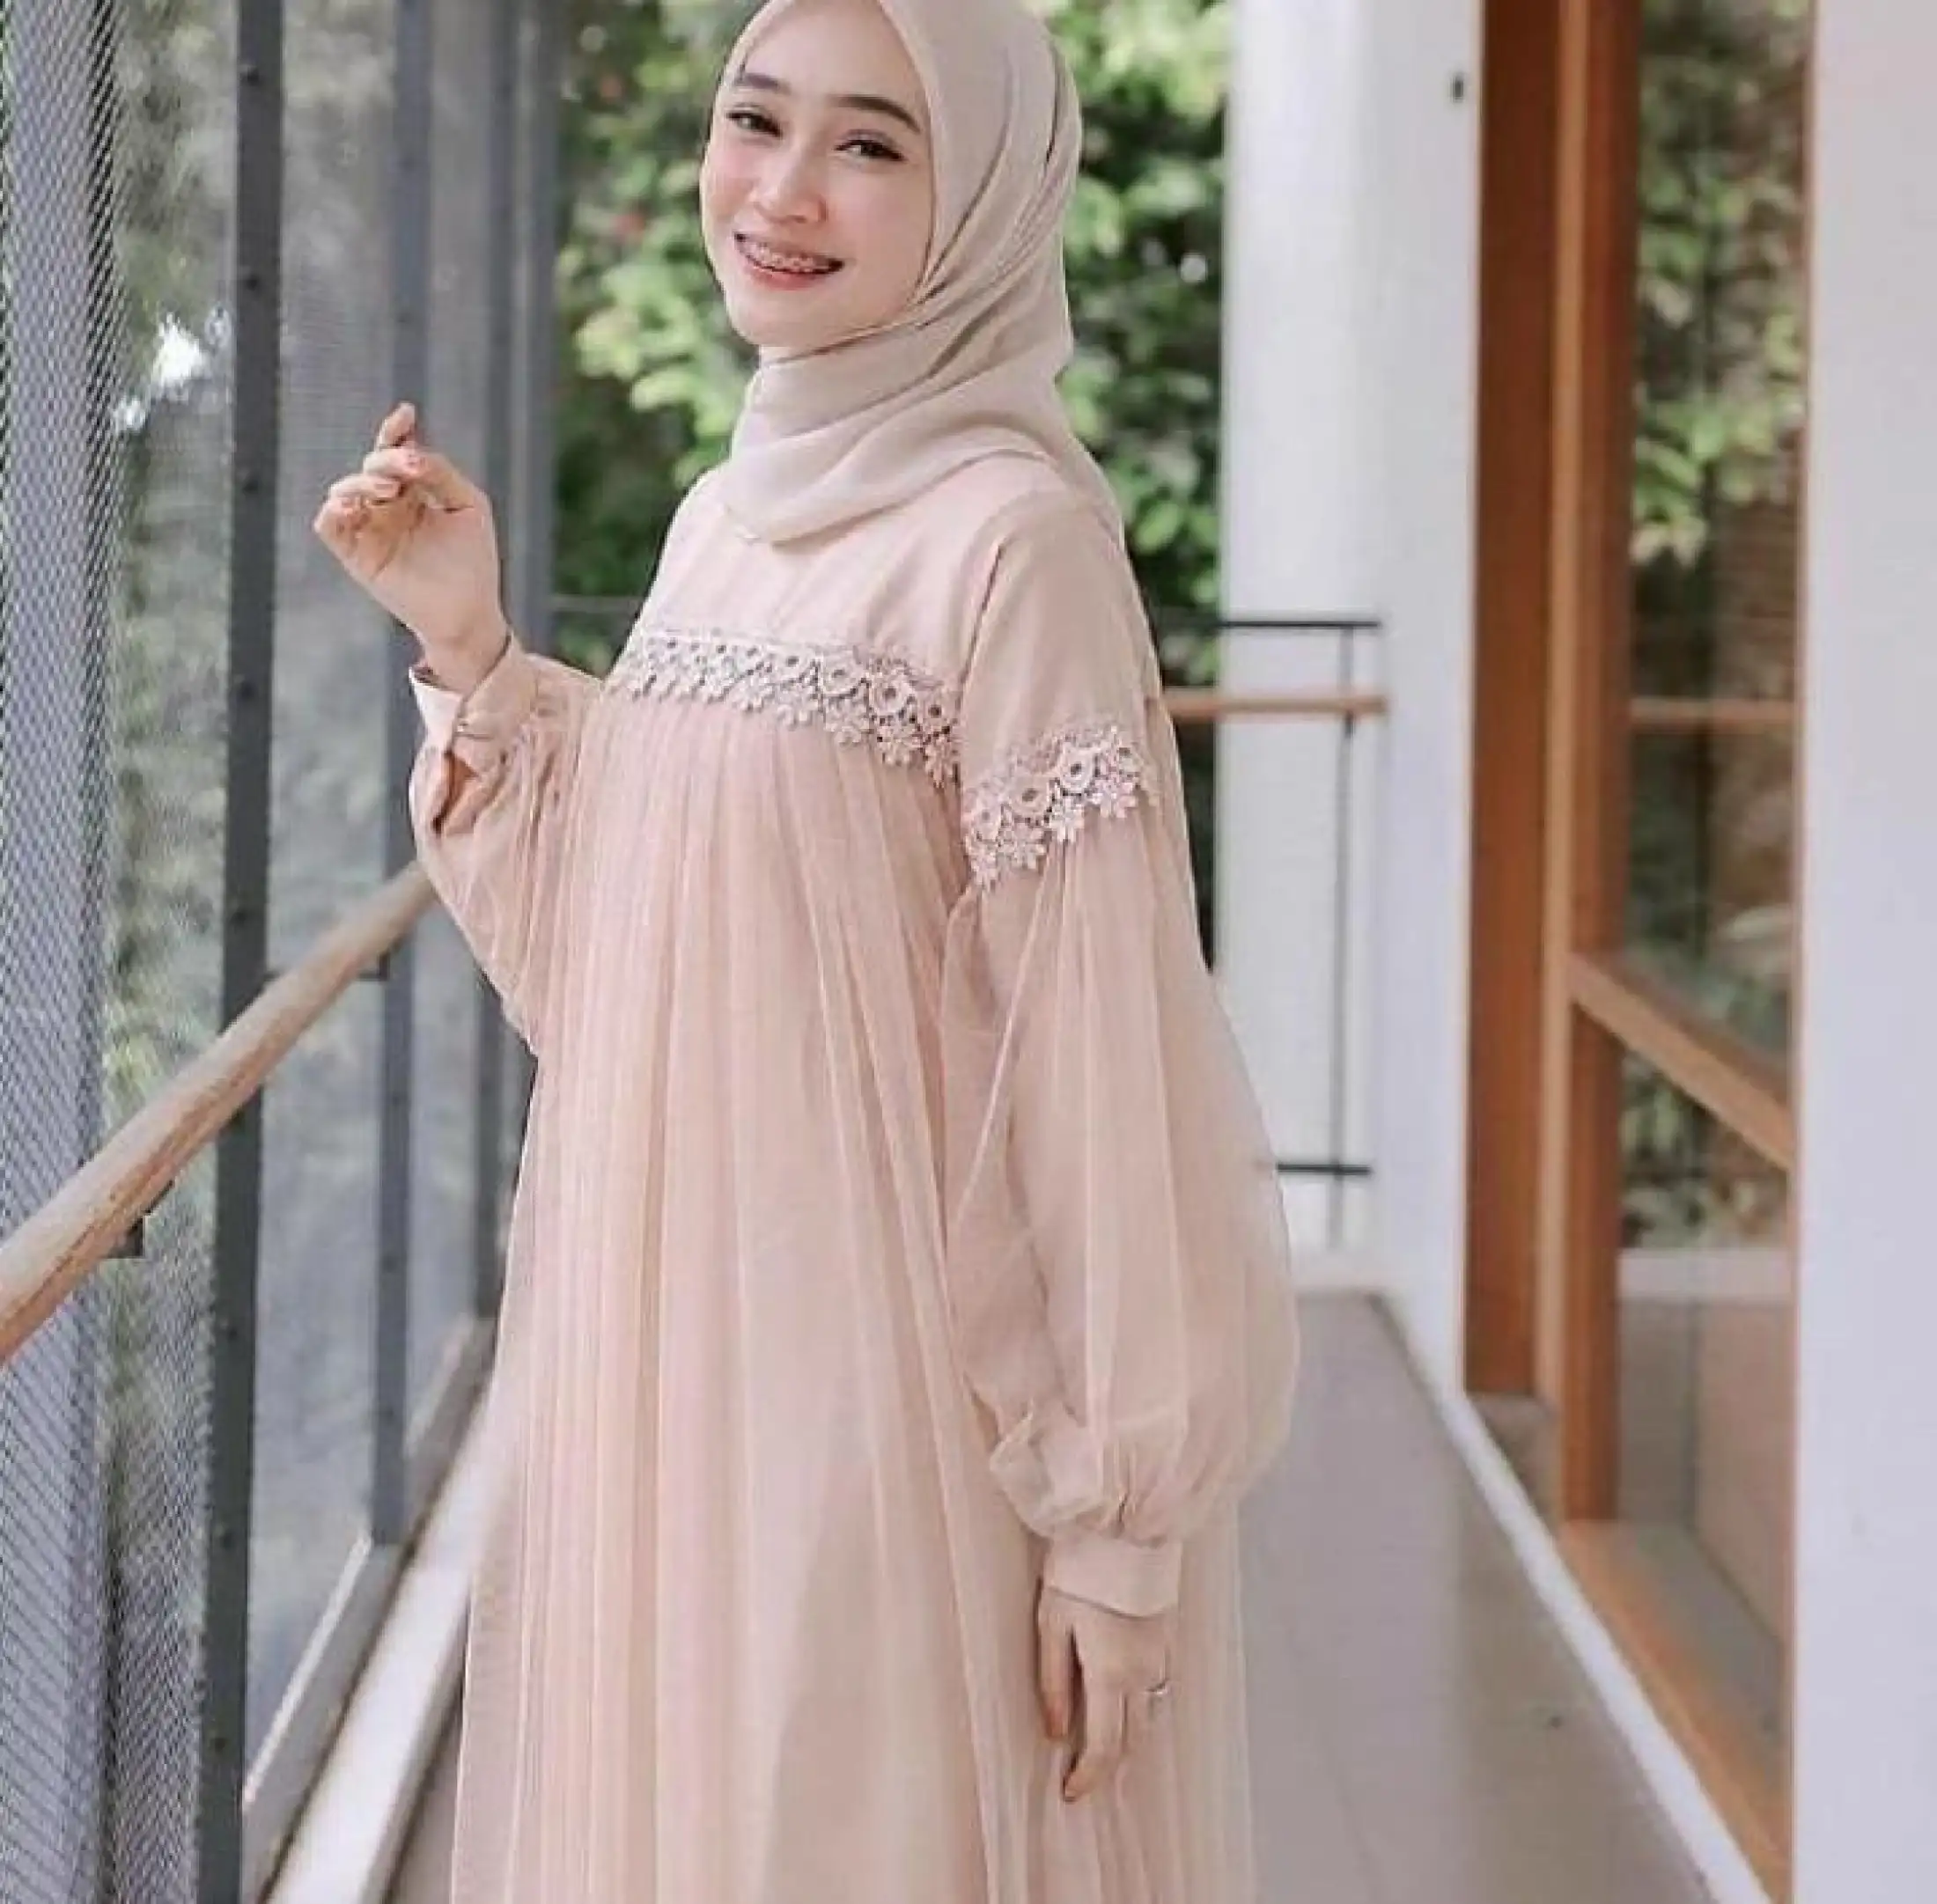 Baju Dress Zoya Maxi Wanita Bahan Moscrepe Tille Import Korea Style Baju Gamis Terbaru 2020 Modern Remaja Baju Muslim Hijab Lengan Panjang Baju Gaun Pesta Terlaris Bisa Cod Lazada Indonesia